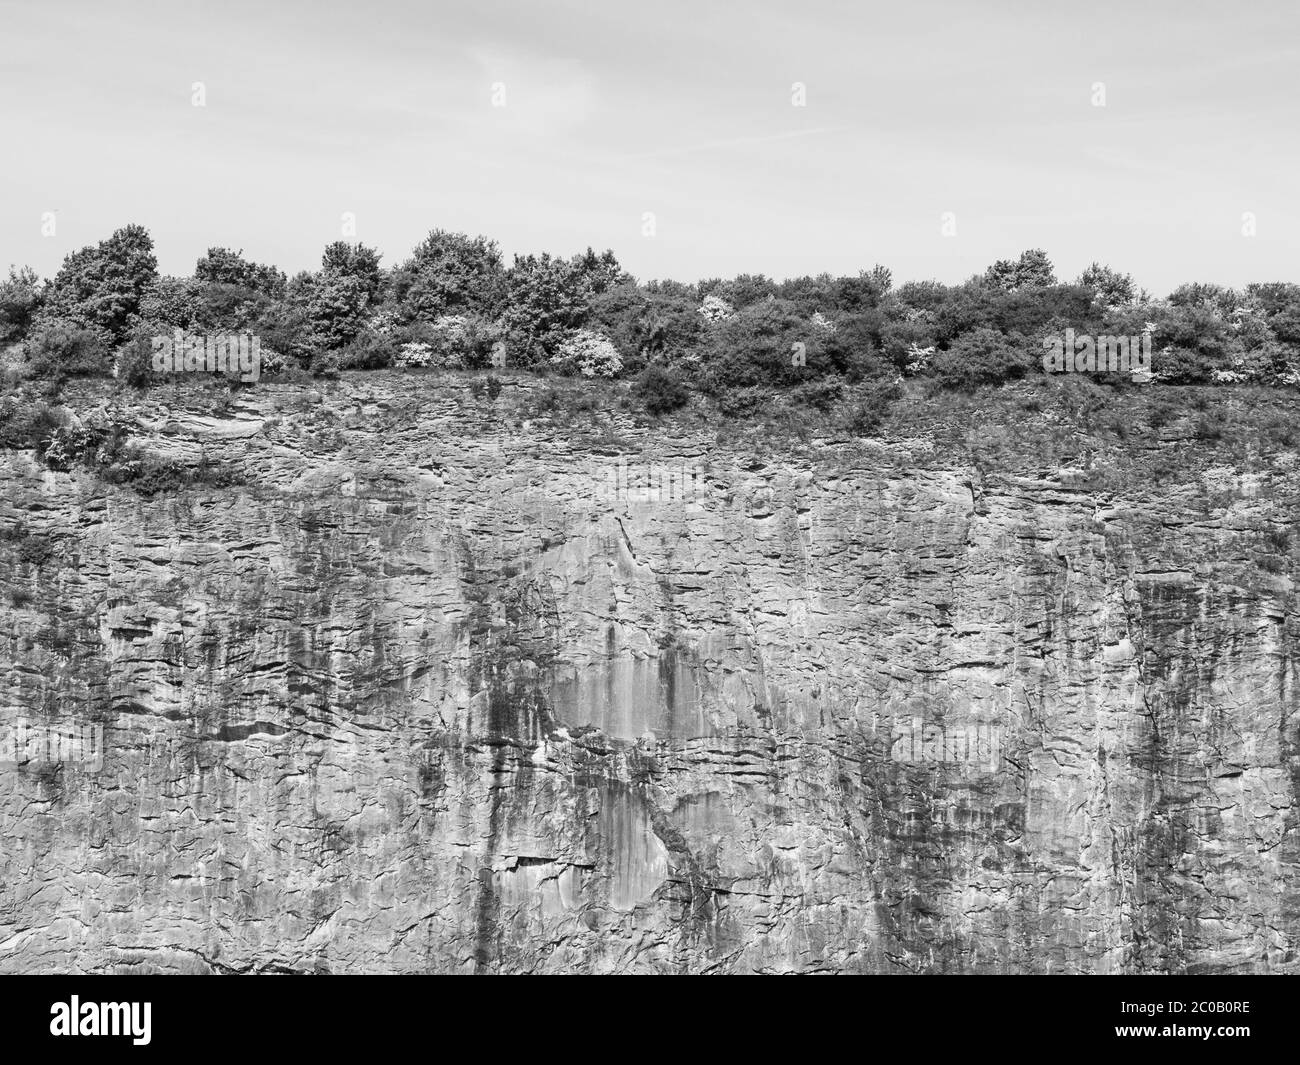 Fine del mondo, parete verticale in pietra di vecchia cava di calce con cespuglio sul bordo, immagine in bianco e nero Foto Stock